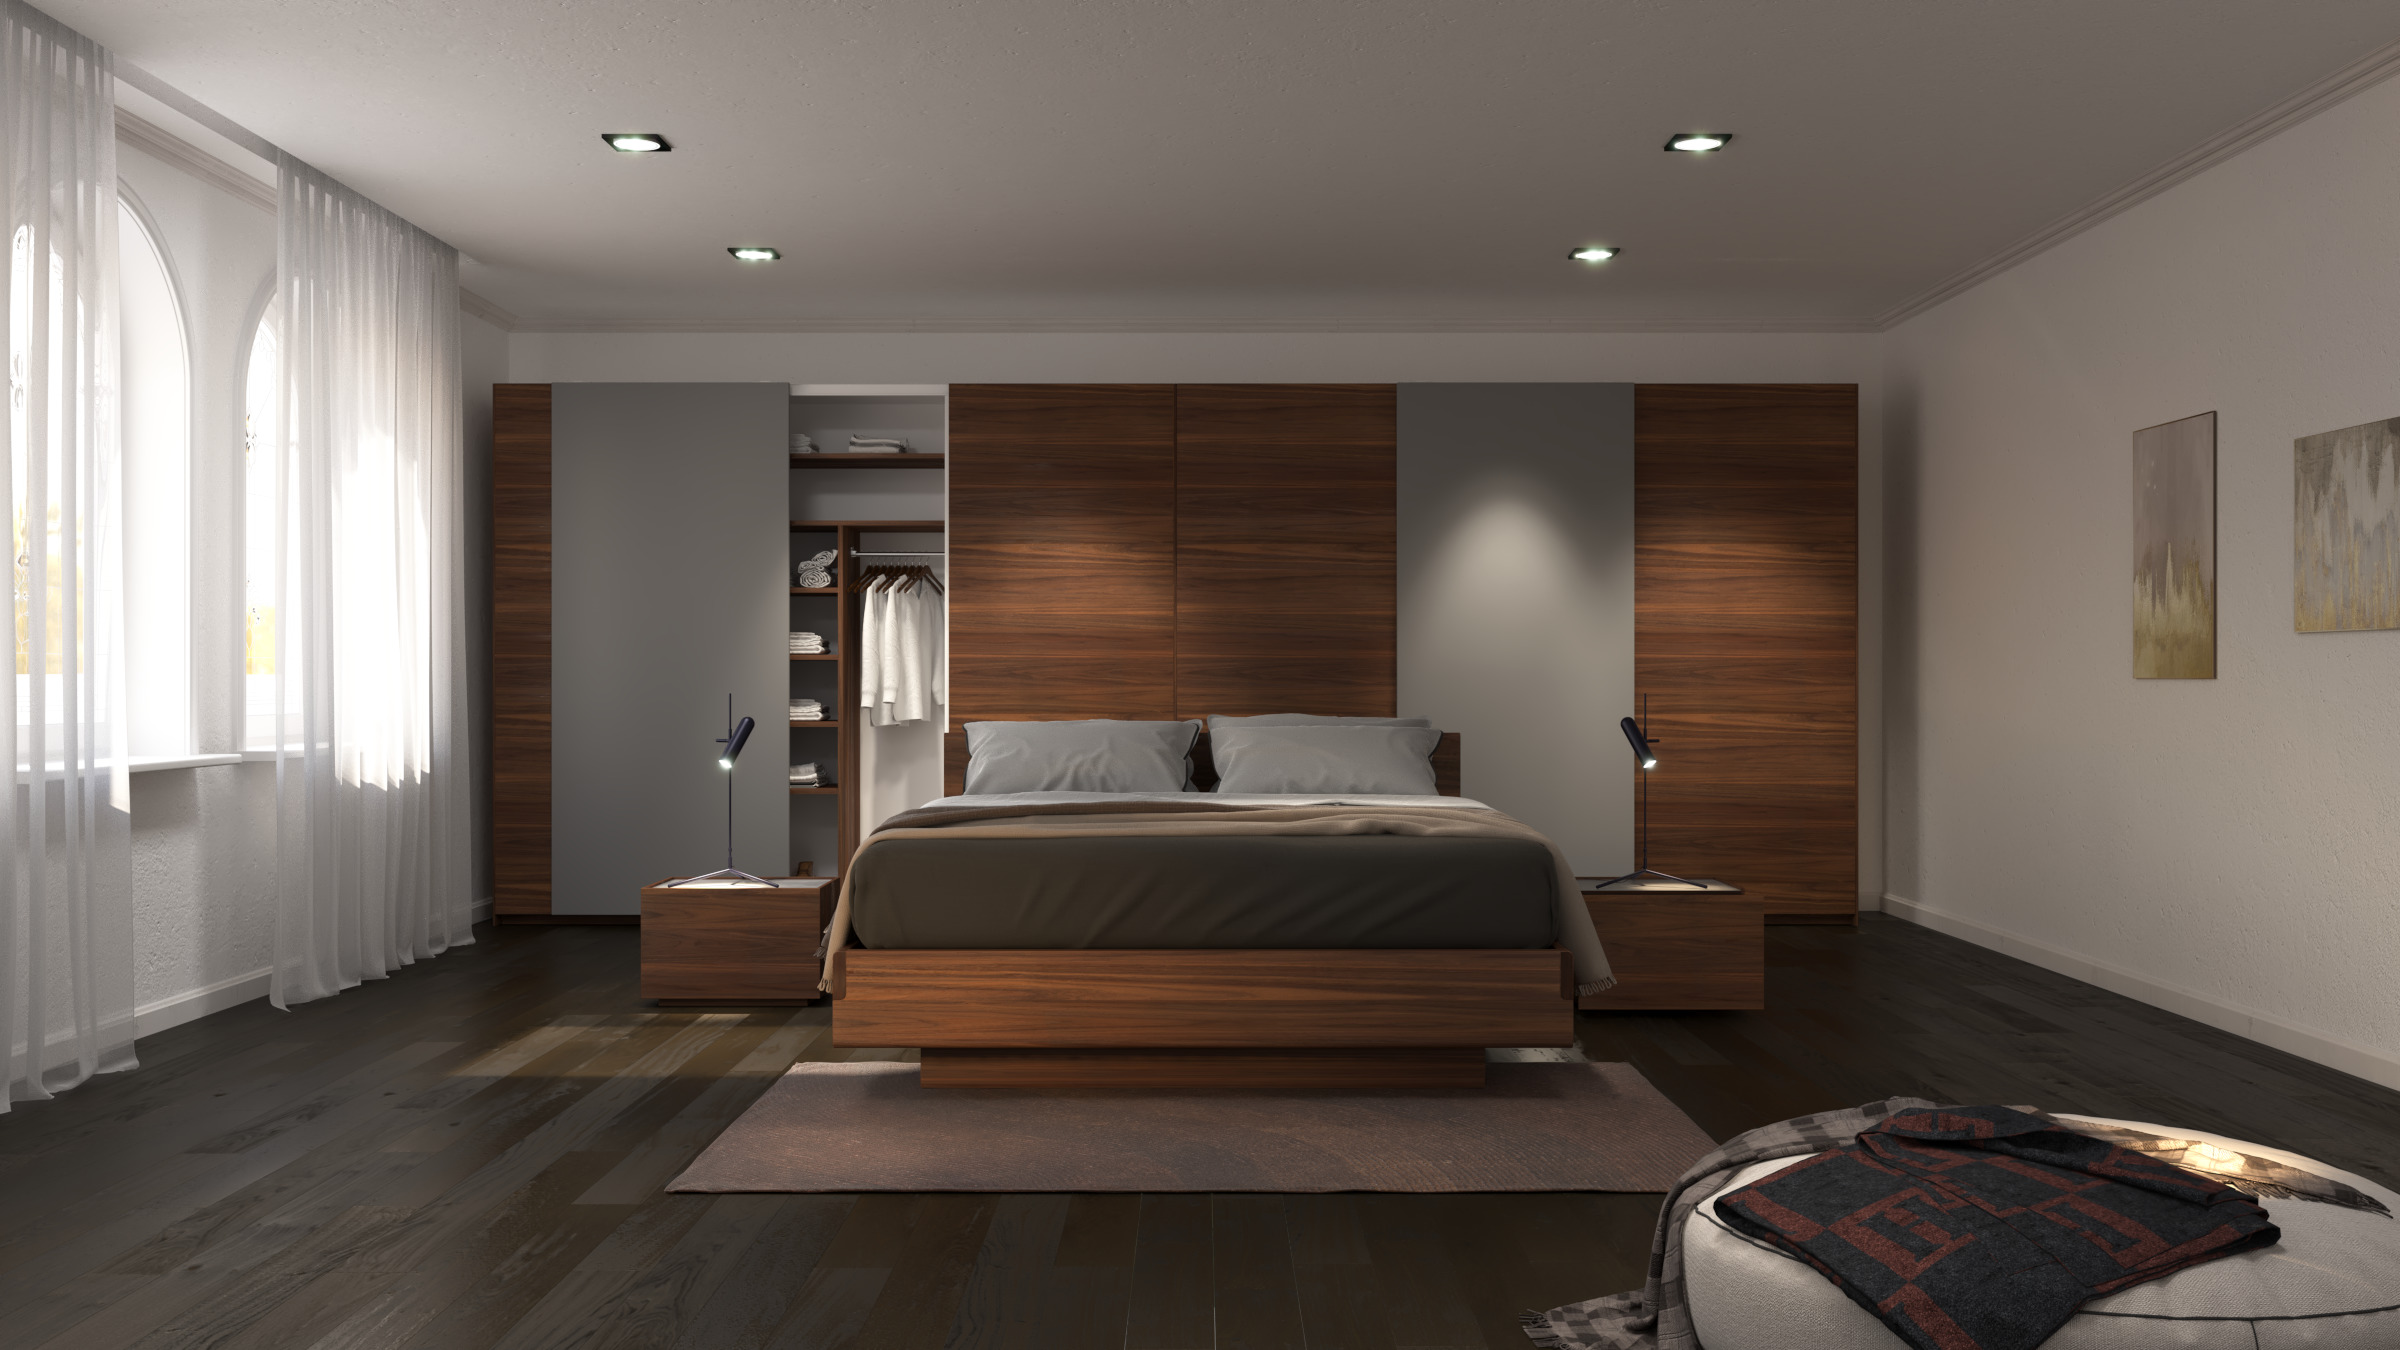 Xu hướng dùng nội thất gỗ phòng ngủ qua 5 mẫu thiết kế đẹp